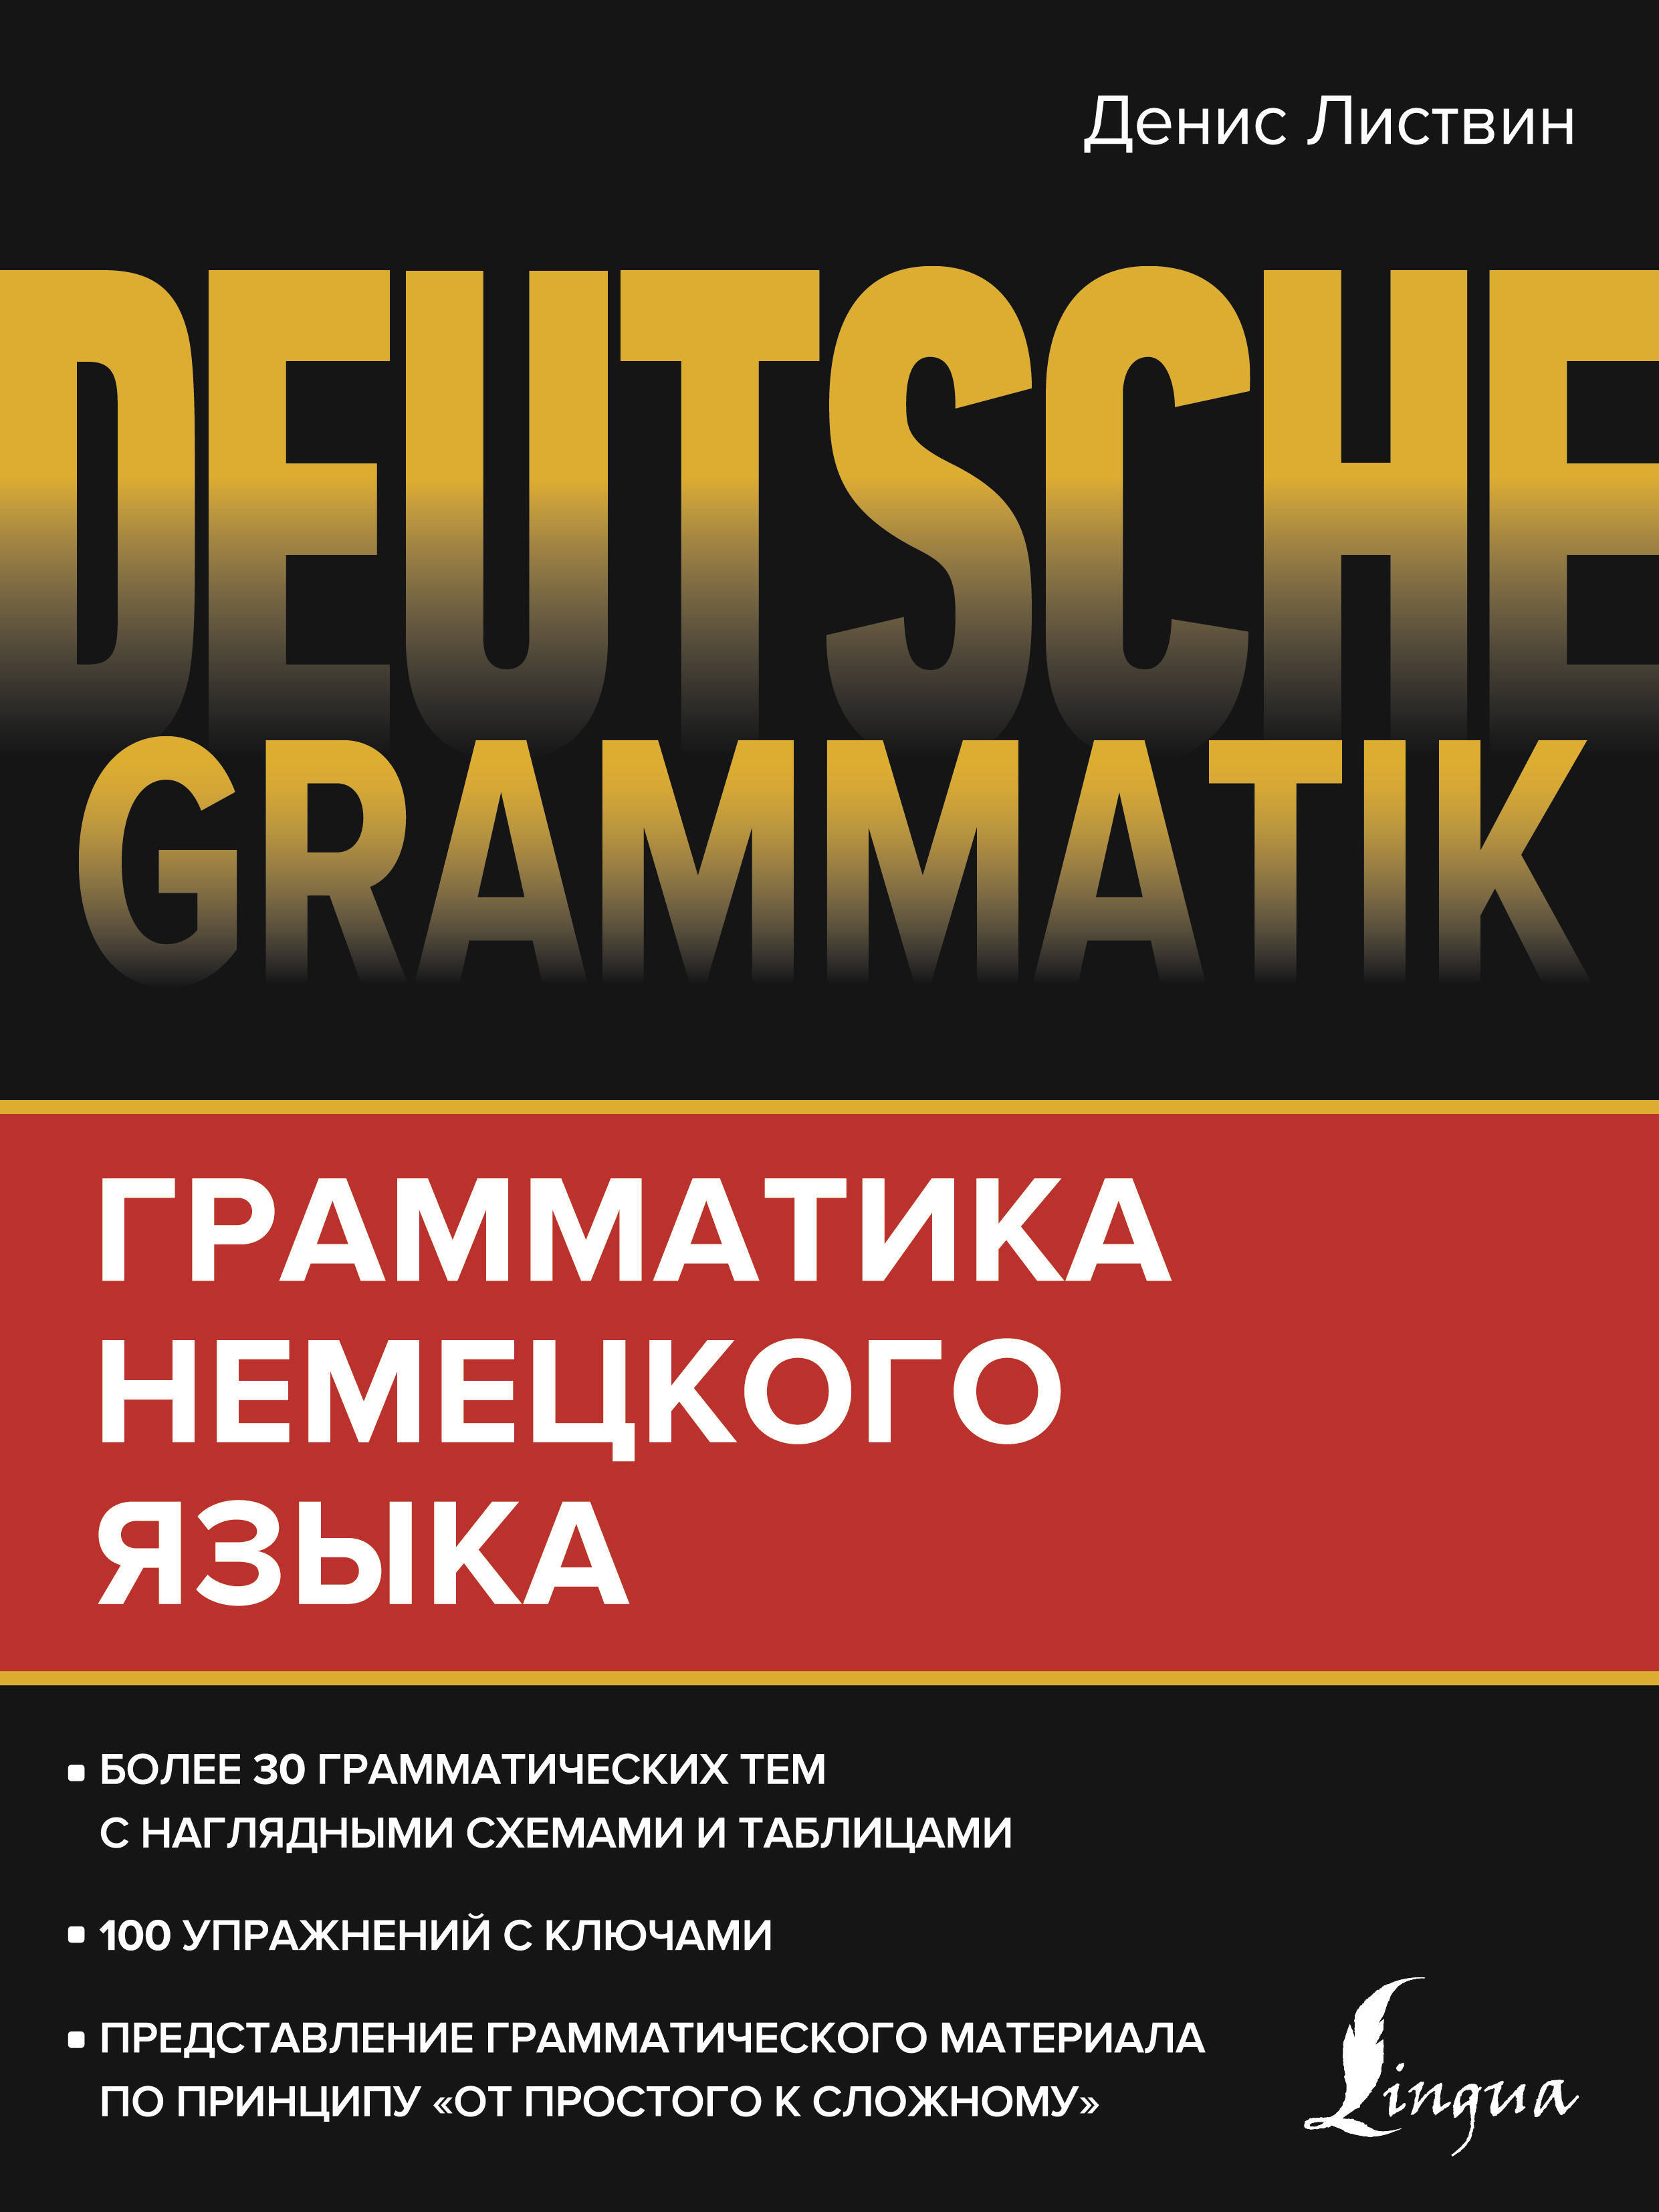 Grammatik немецкий язык